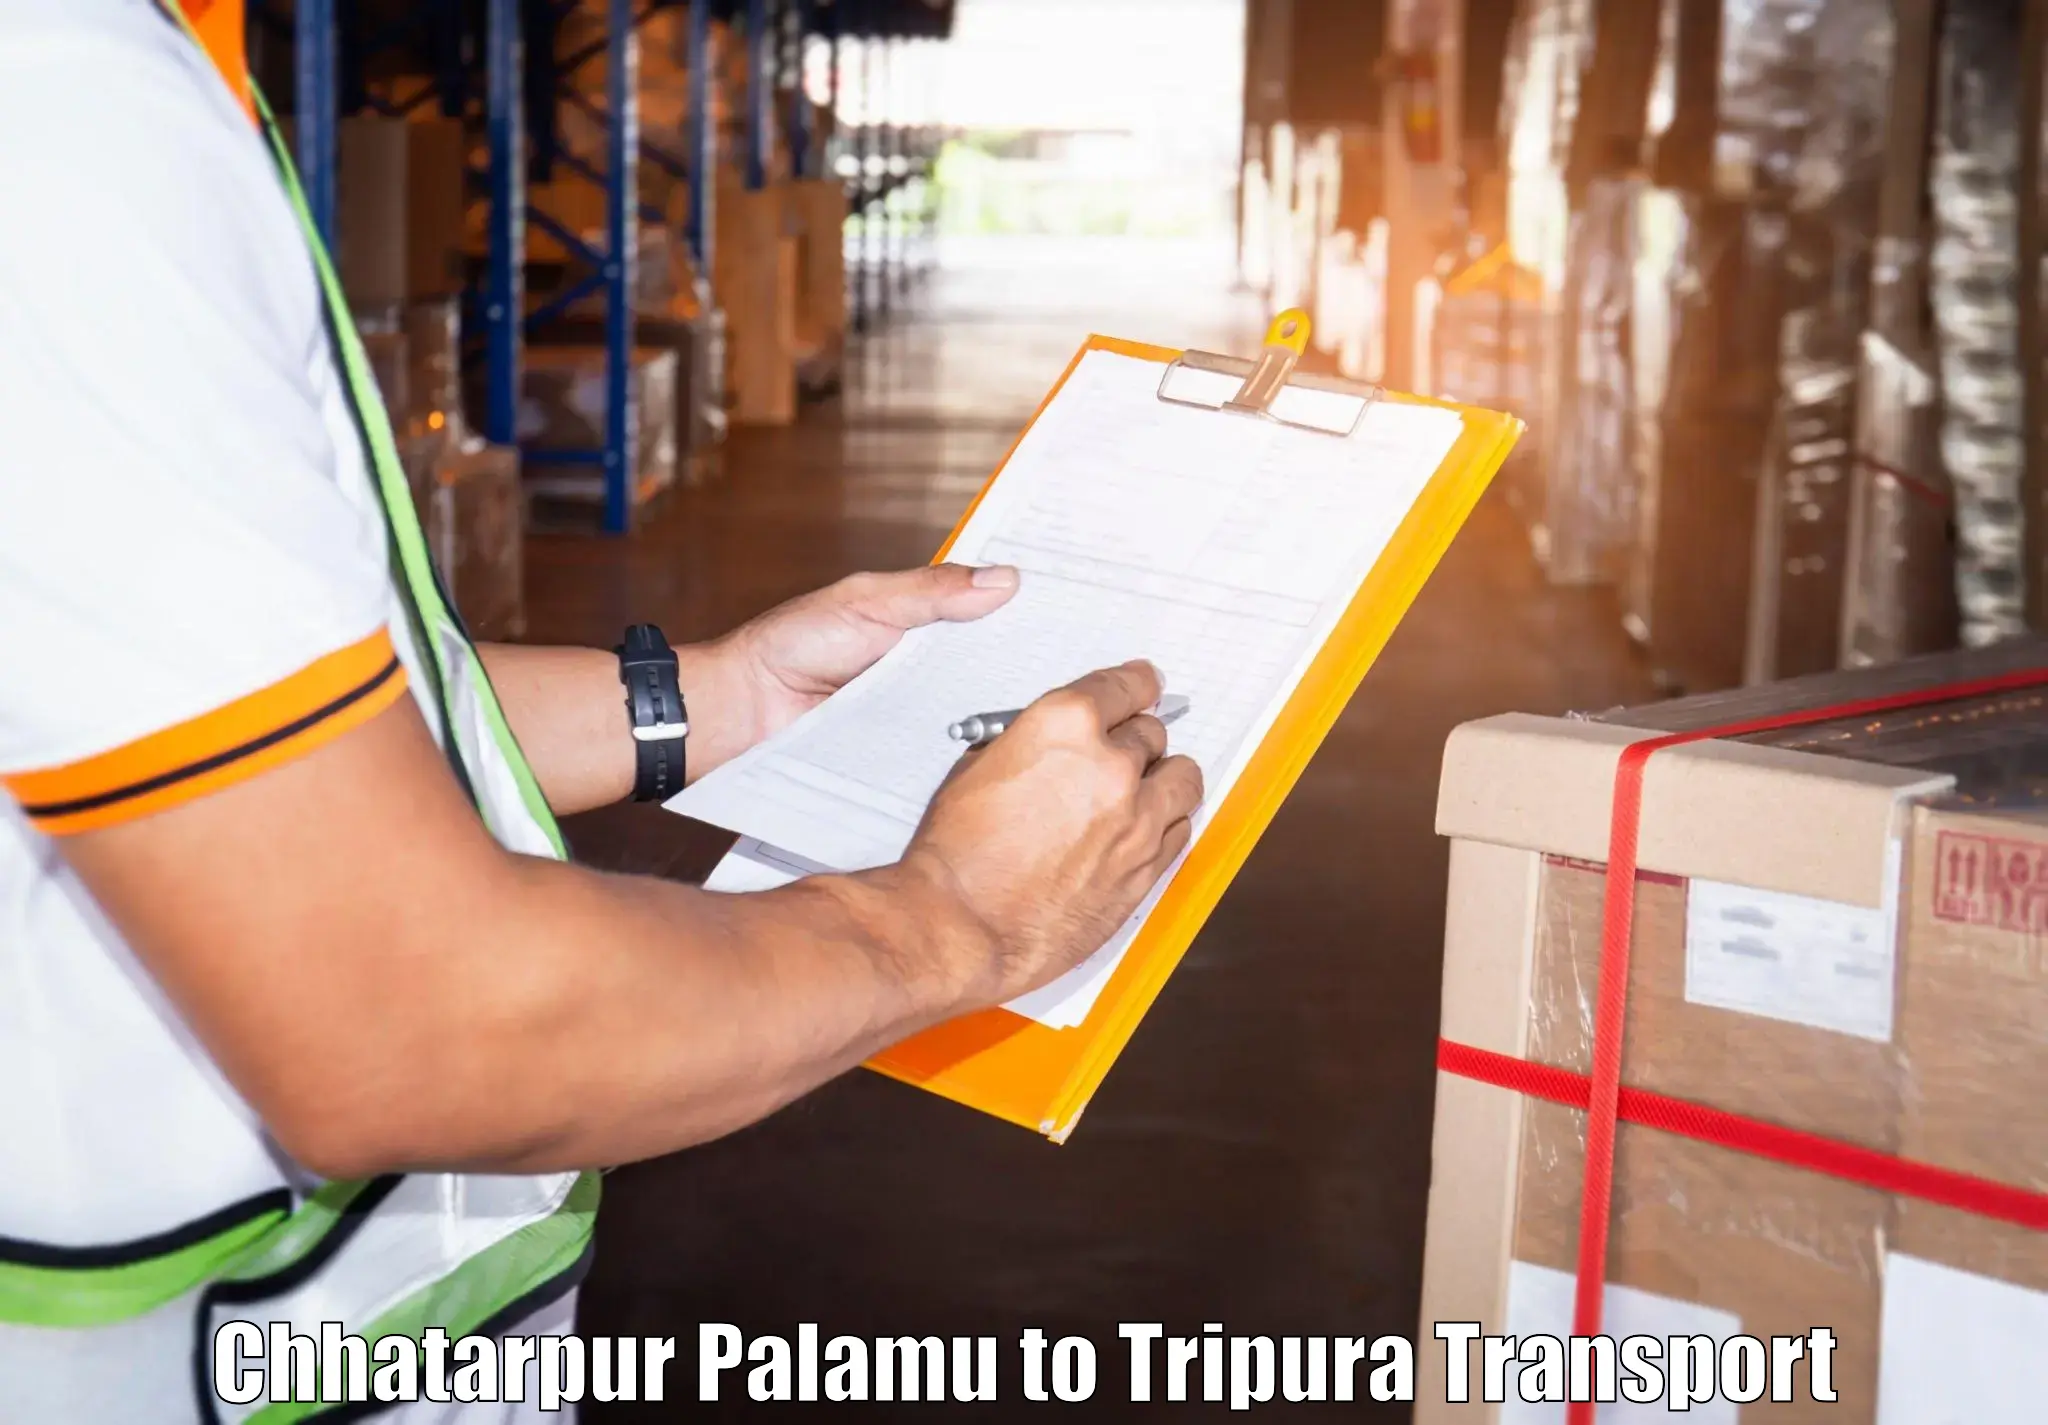 Shipping partner Chhatarpur Palamu to Santirbazar